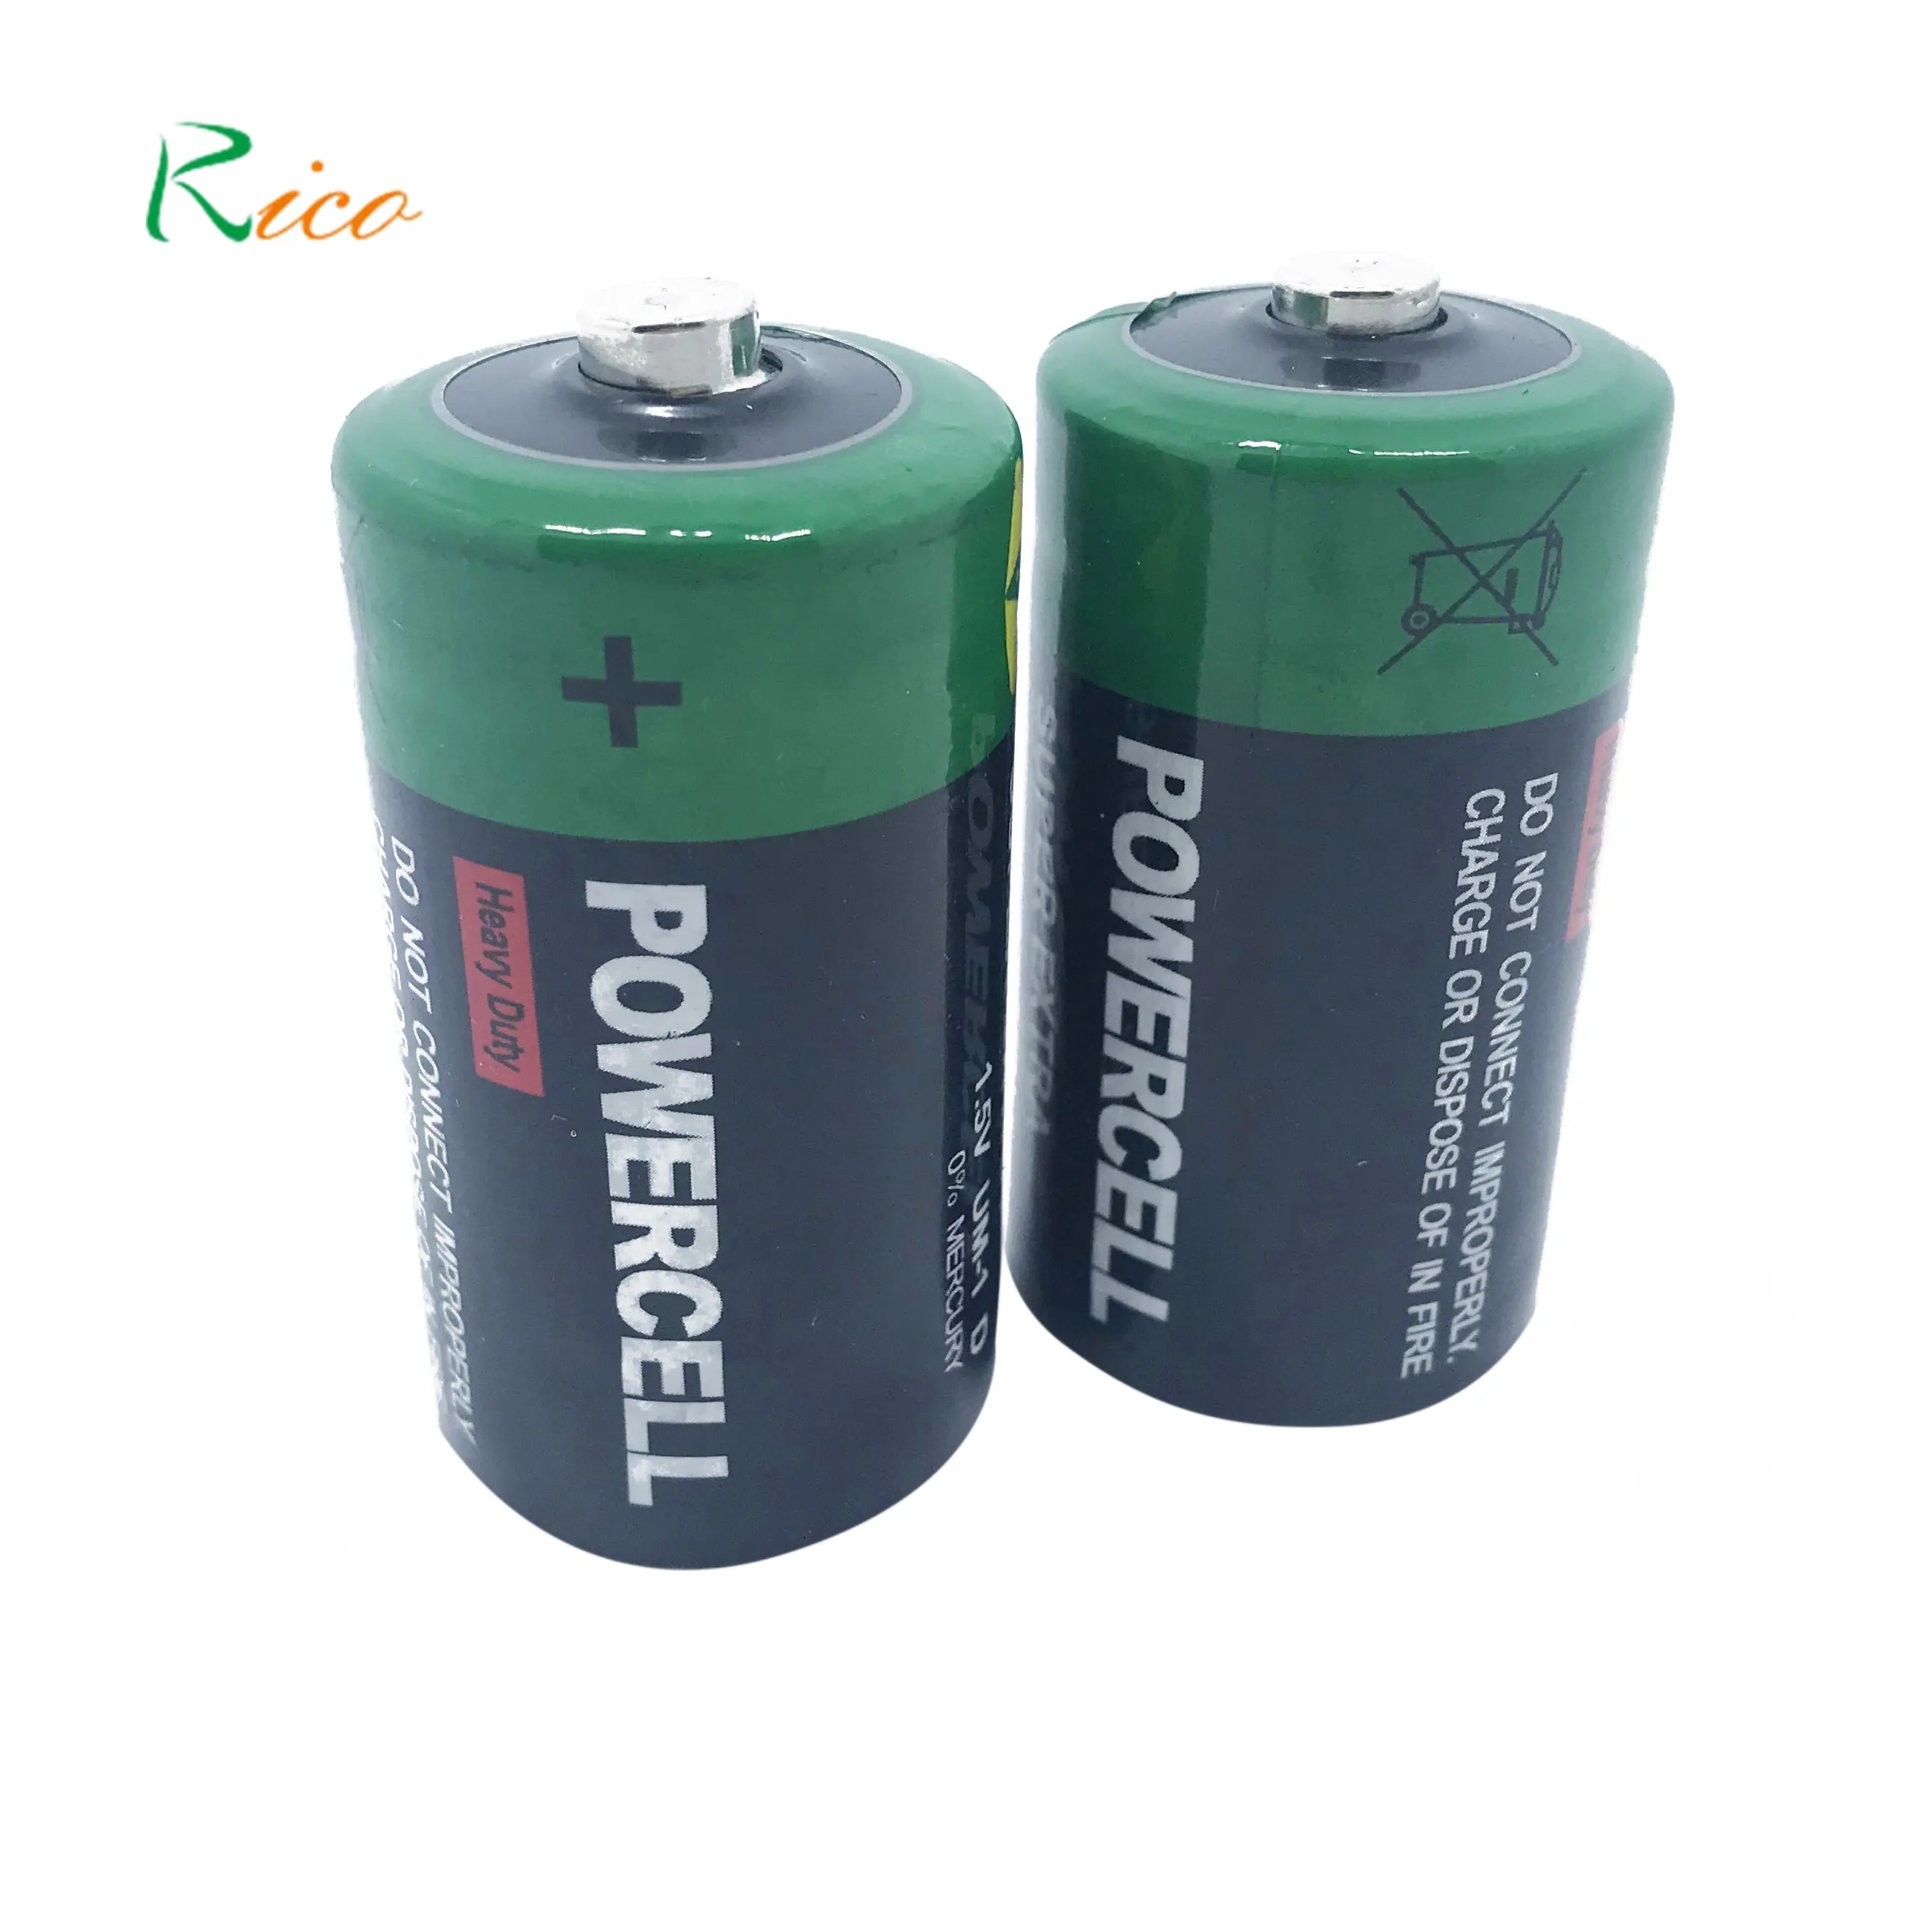 Offres Spéciales! Batterie carbone-zinc R20/Pile sèche